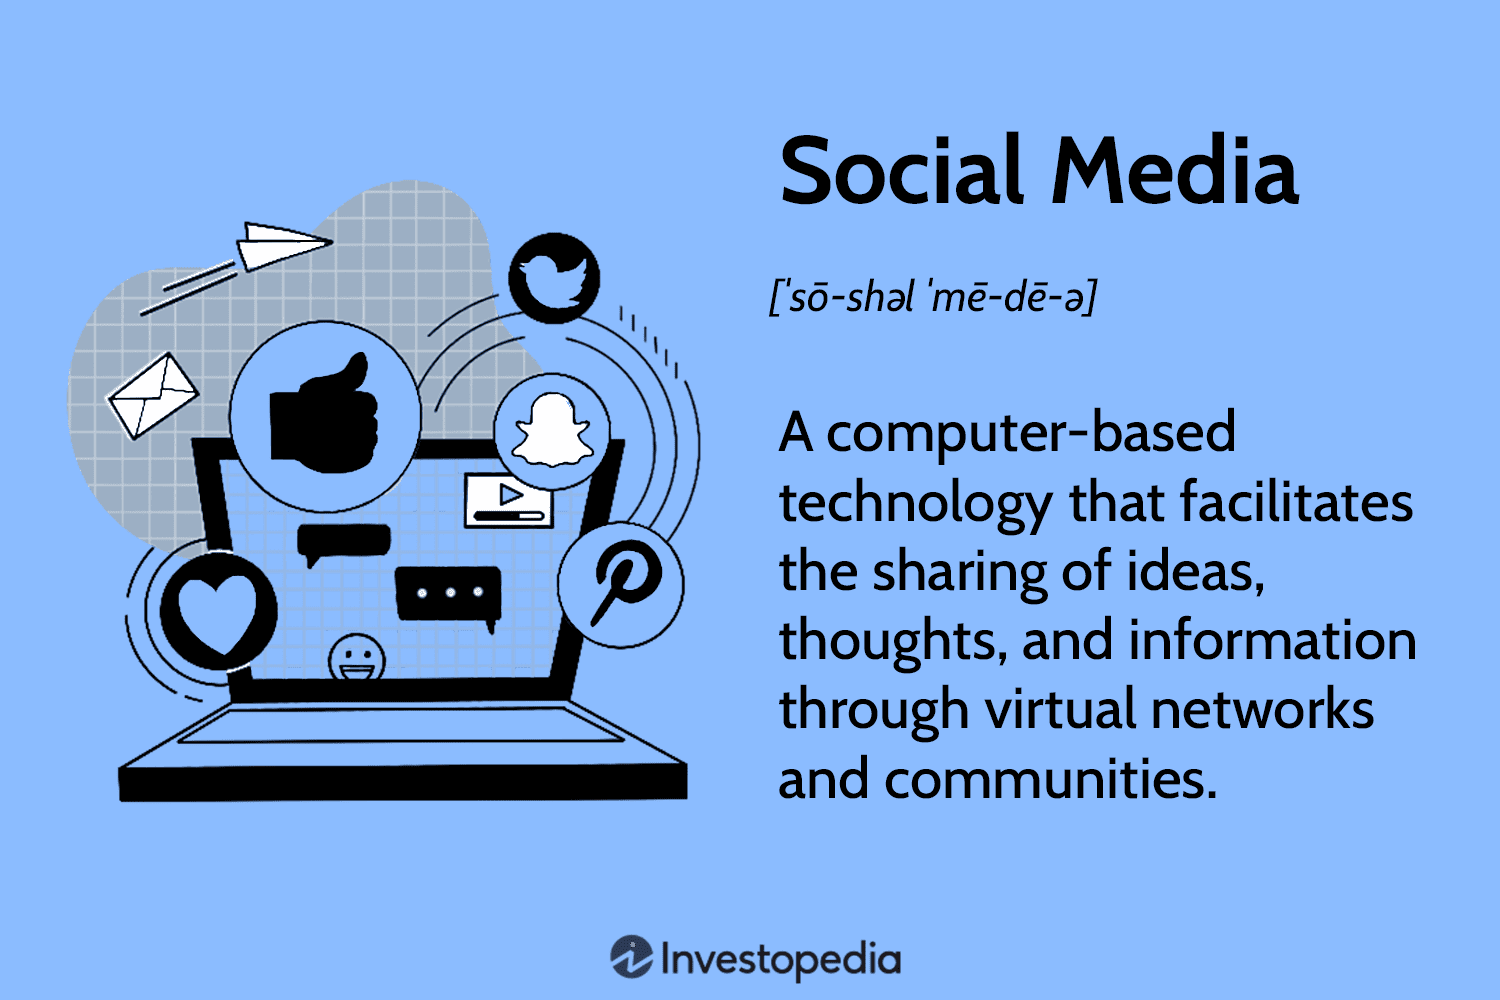 Social Media Definition